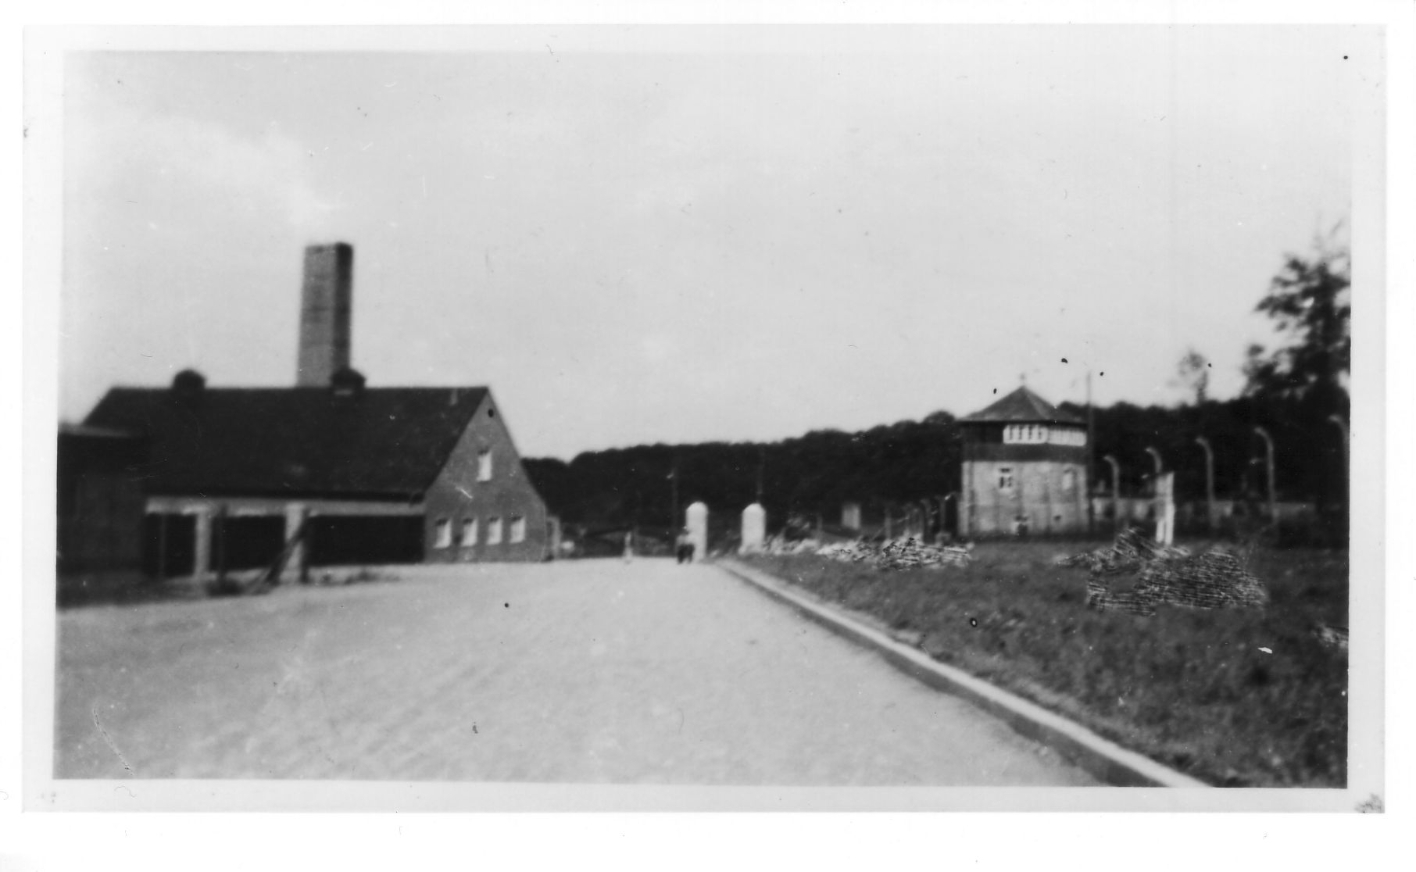 Unscharfes Bild einer Lagerstraße, die zum Krematorium führt. Rechts im Hintergrund ist ein Wachturm, links das Krematorium. Rechts auf dem Grasstreifen vor dem Lagerzaun erkennbare Spuren von Retuschen. 